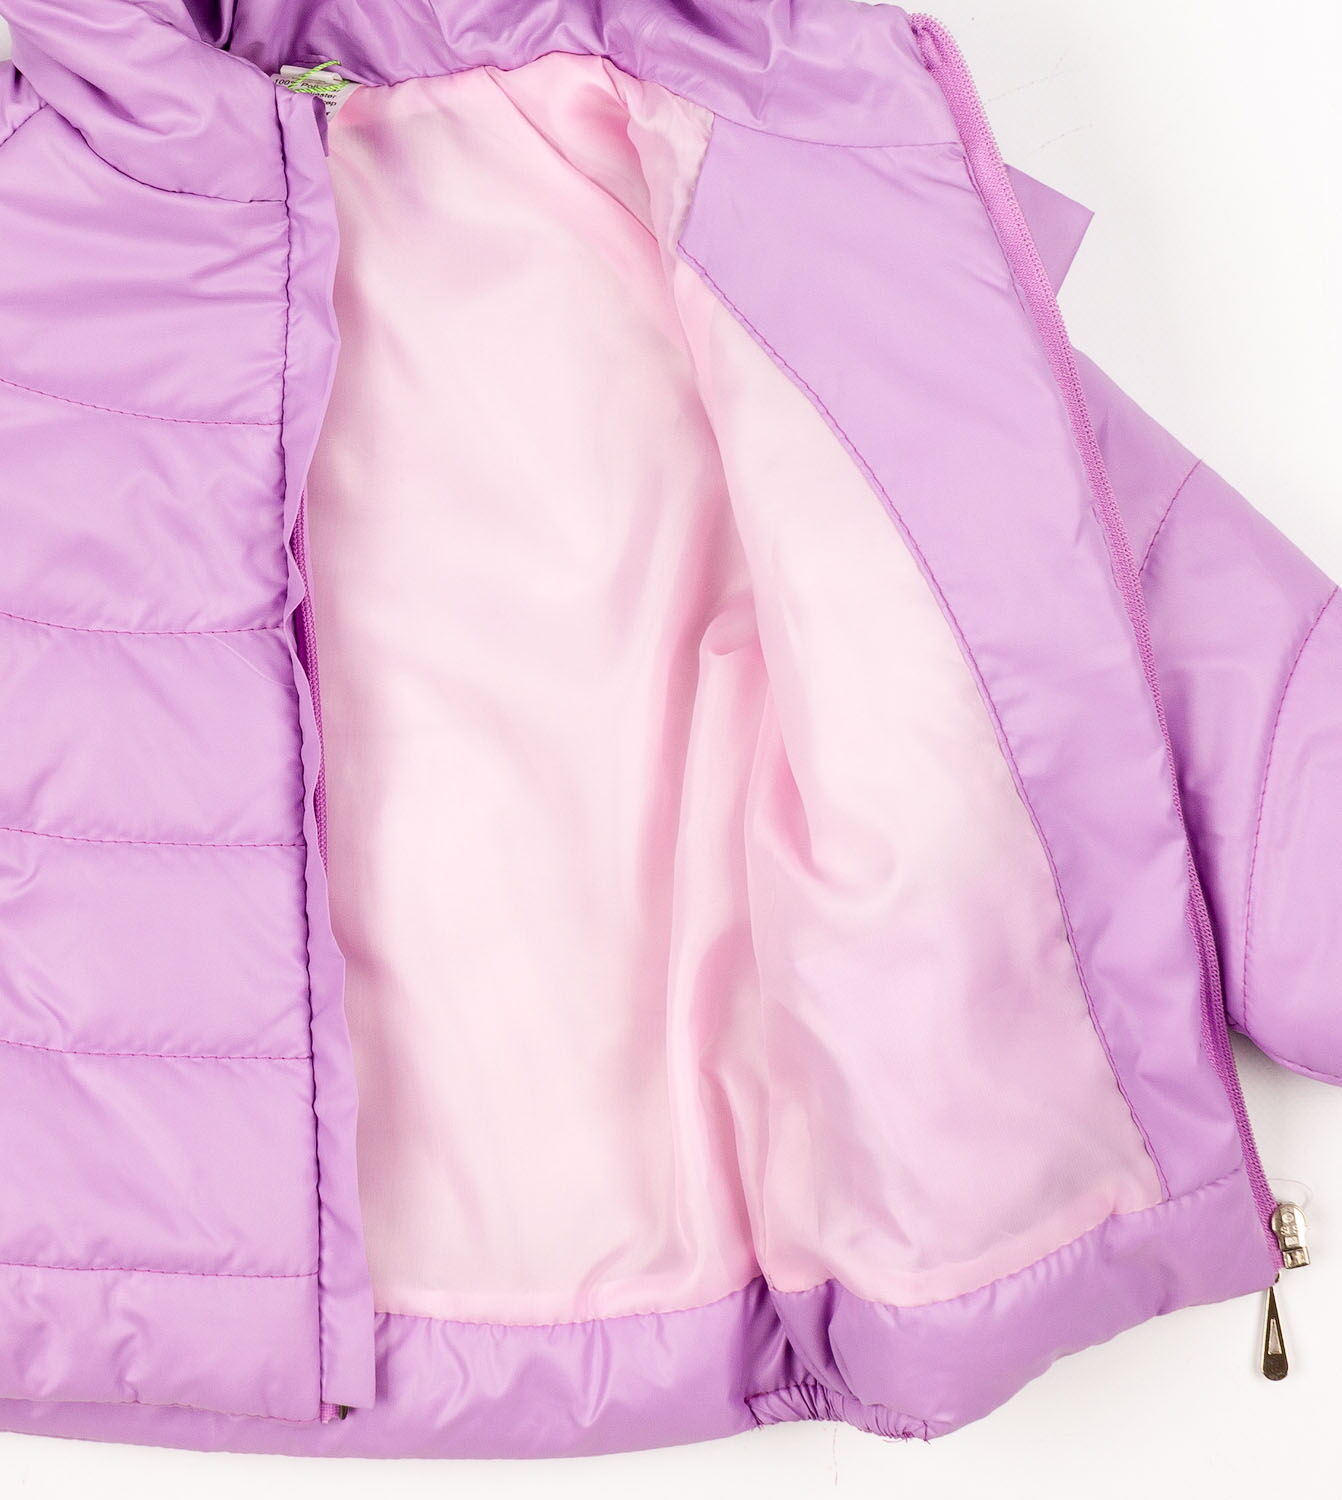 Куртка для девочки Одягайко сирень 2596 - фотография